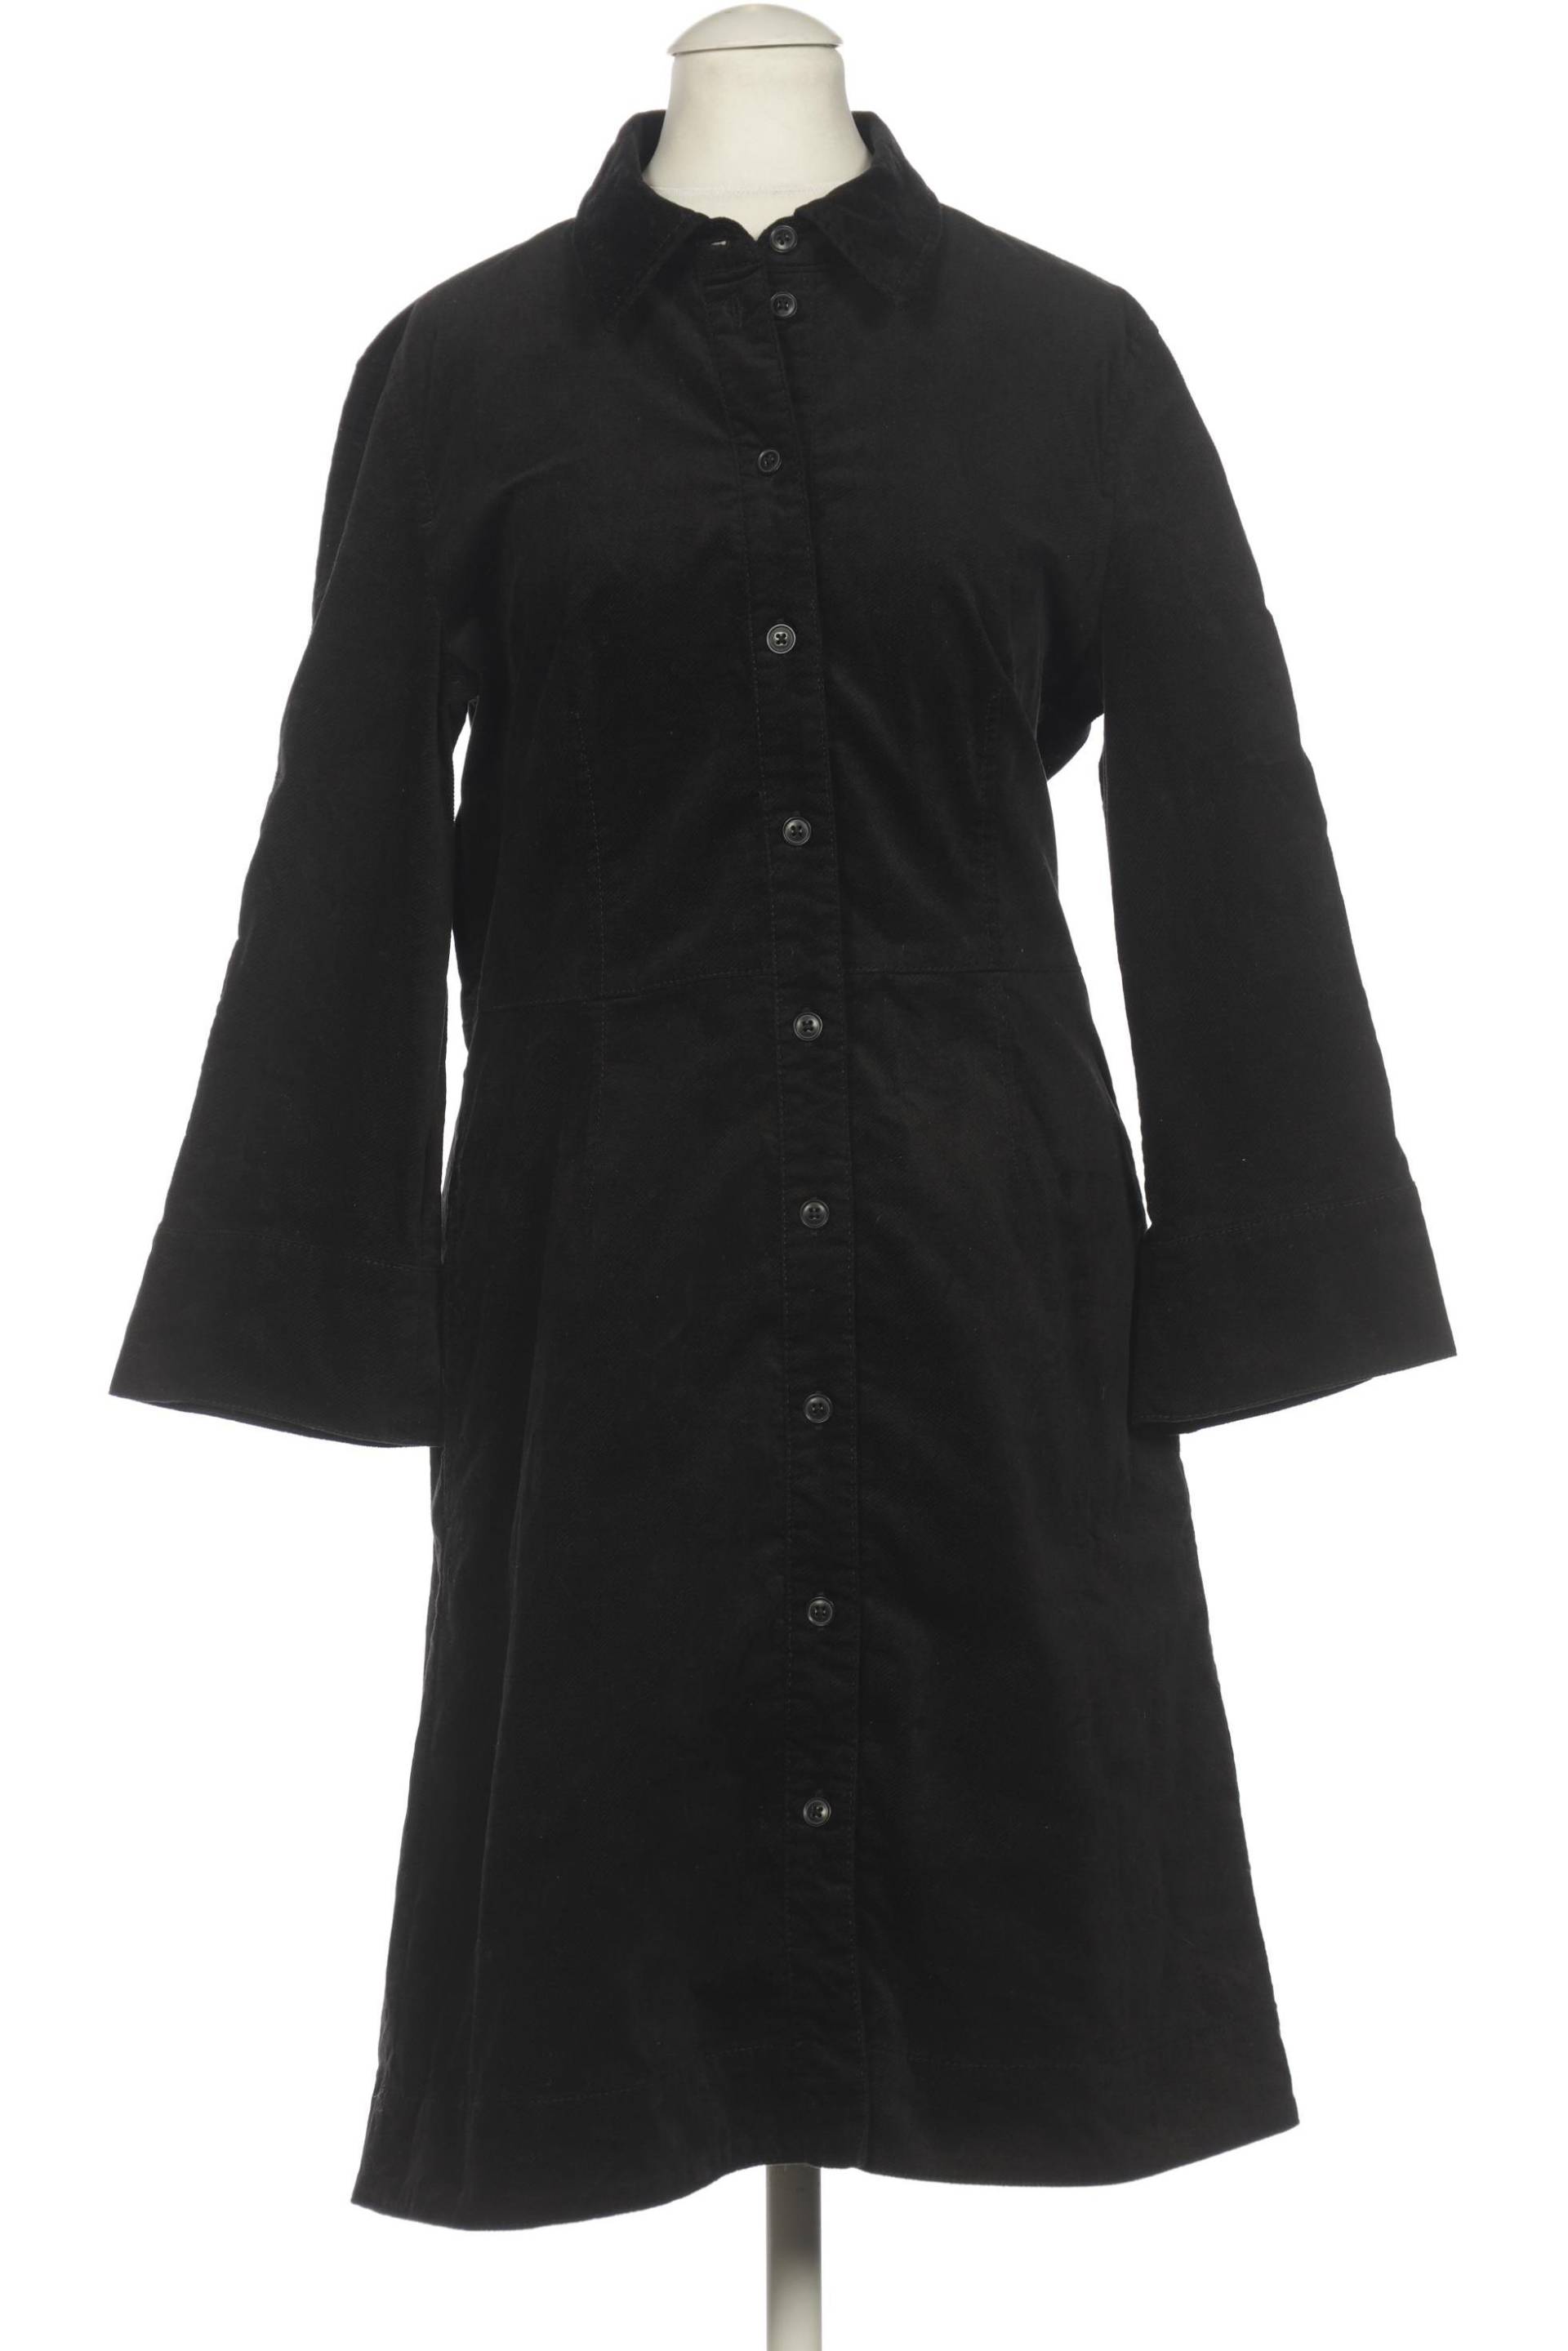 Marc O Polo Damen Kleid, schwarz, Gr. 36 von Marc O Polo